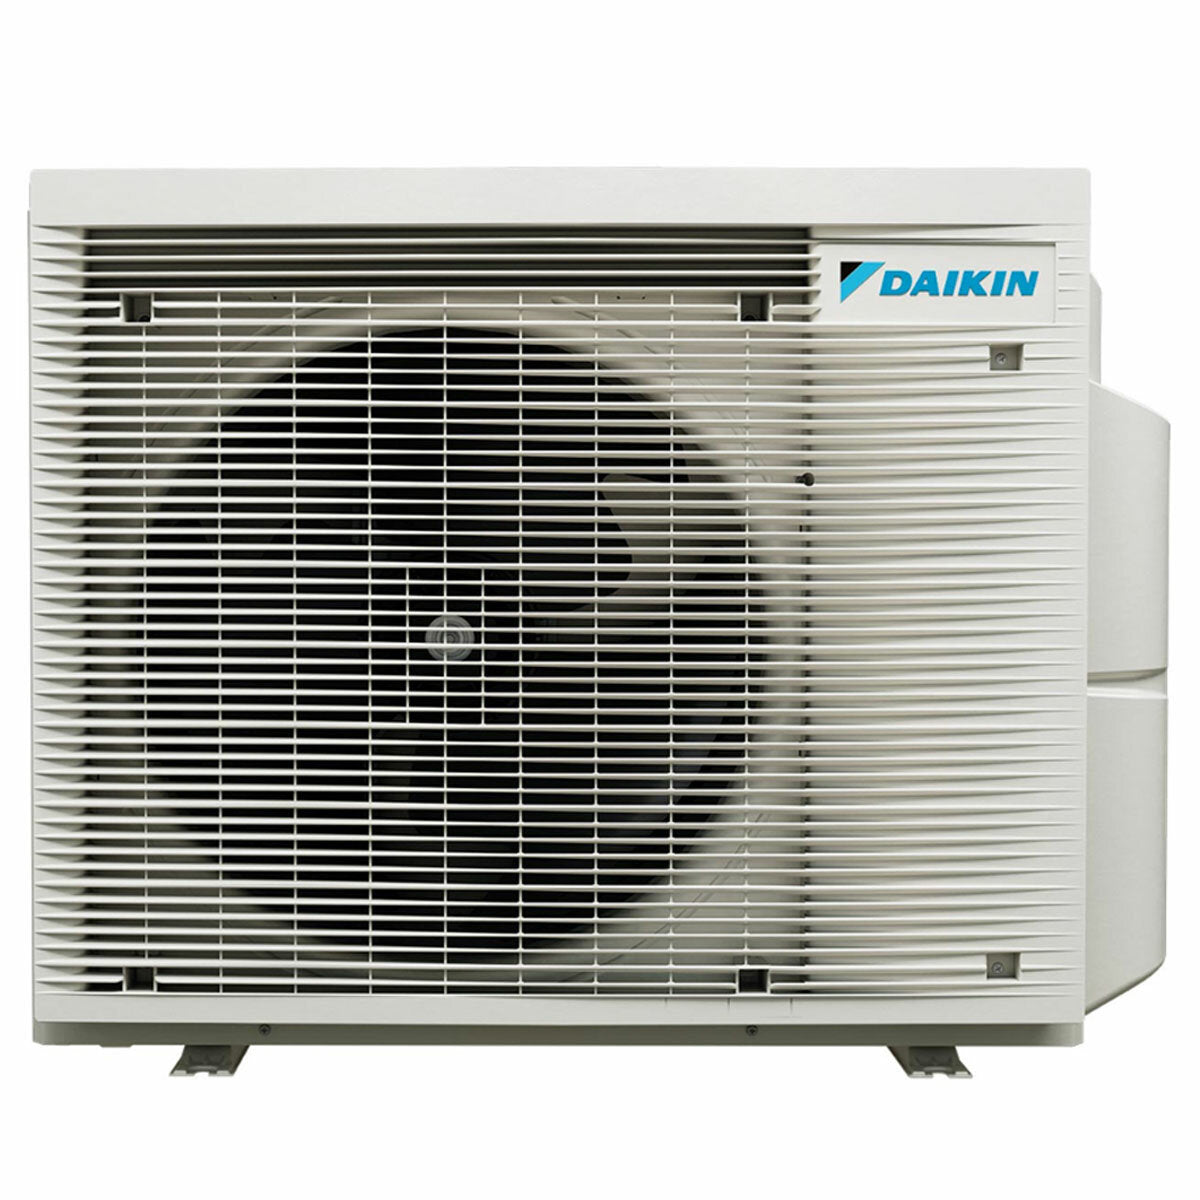 Daikin Emura air conditioner 3 split panels 9000+9000+9000+9000 BTU inverter A+ wifi outdoor unit 6.8 kW Silver